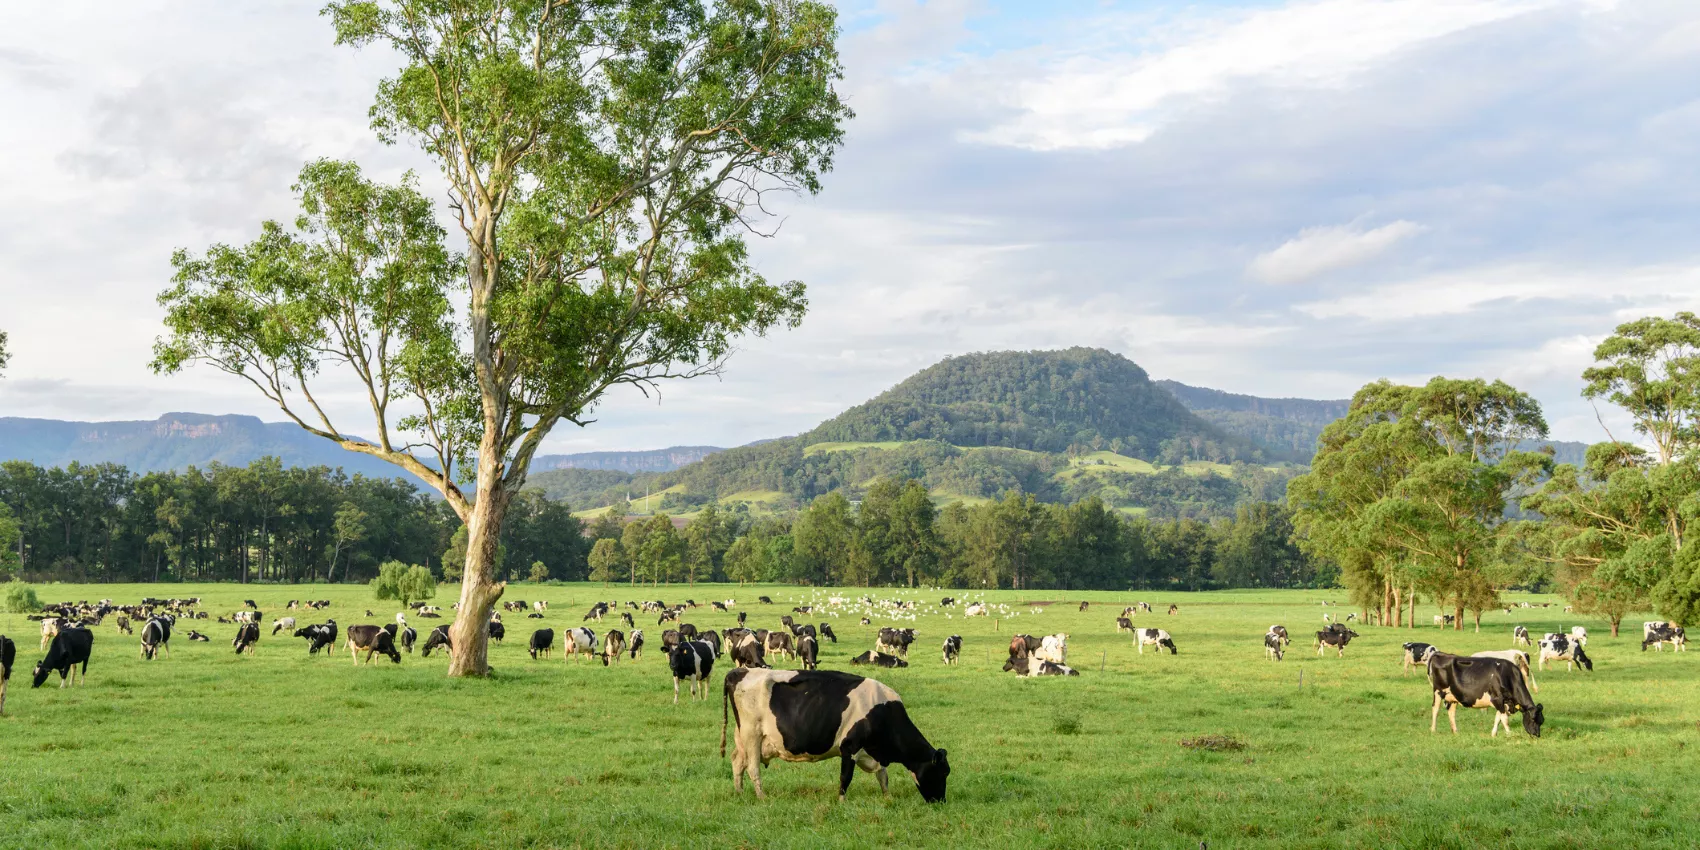 Cows in a grassy Australian field